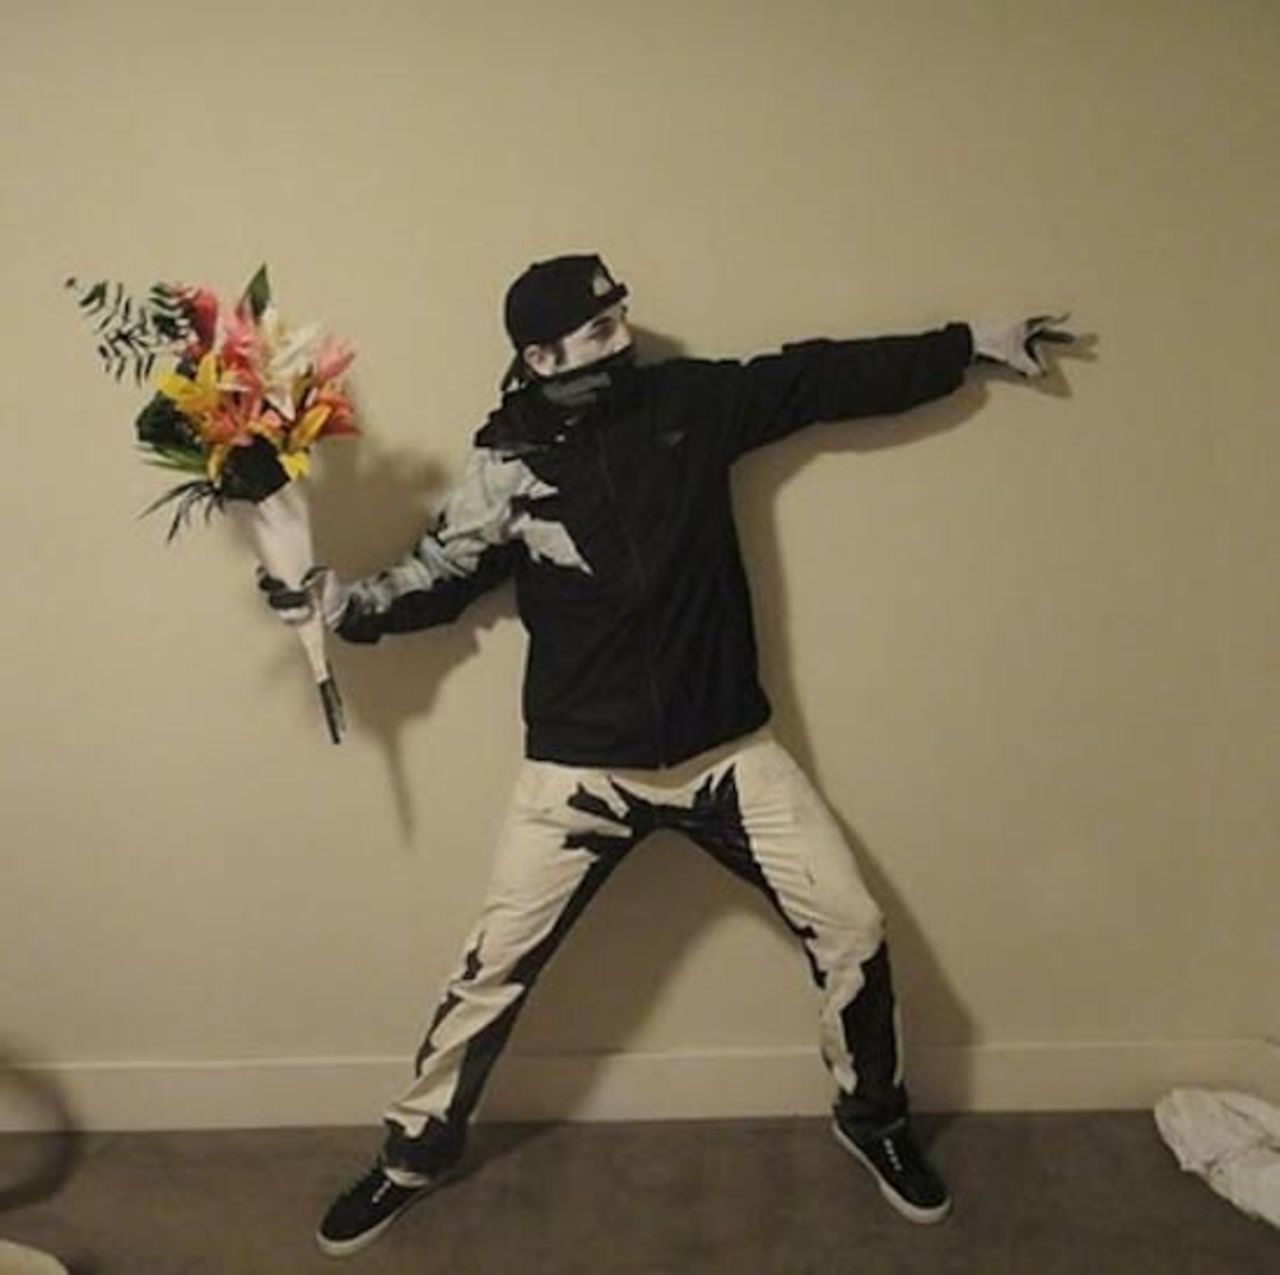 Banksy art halloween costume #art #streetart #mural #graffiti https://t.co/OS9npQSnLk